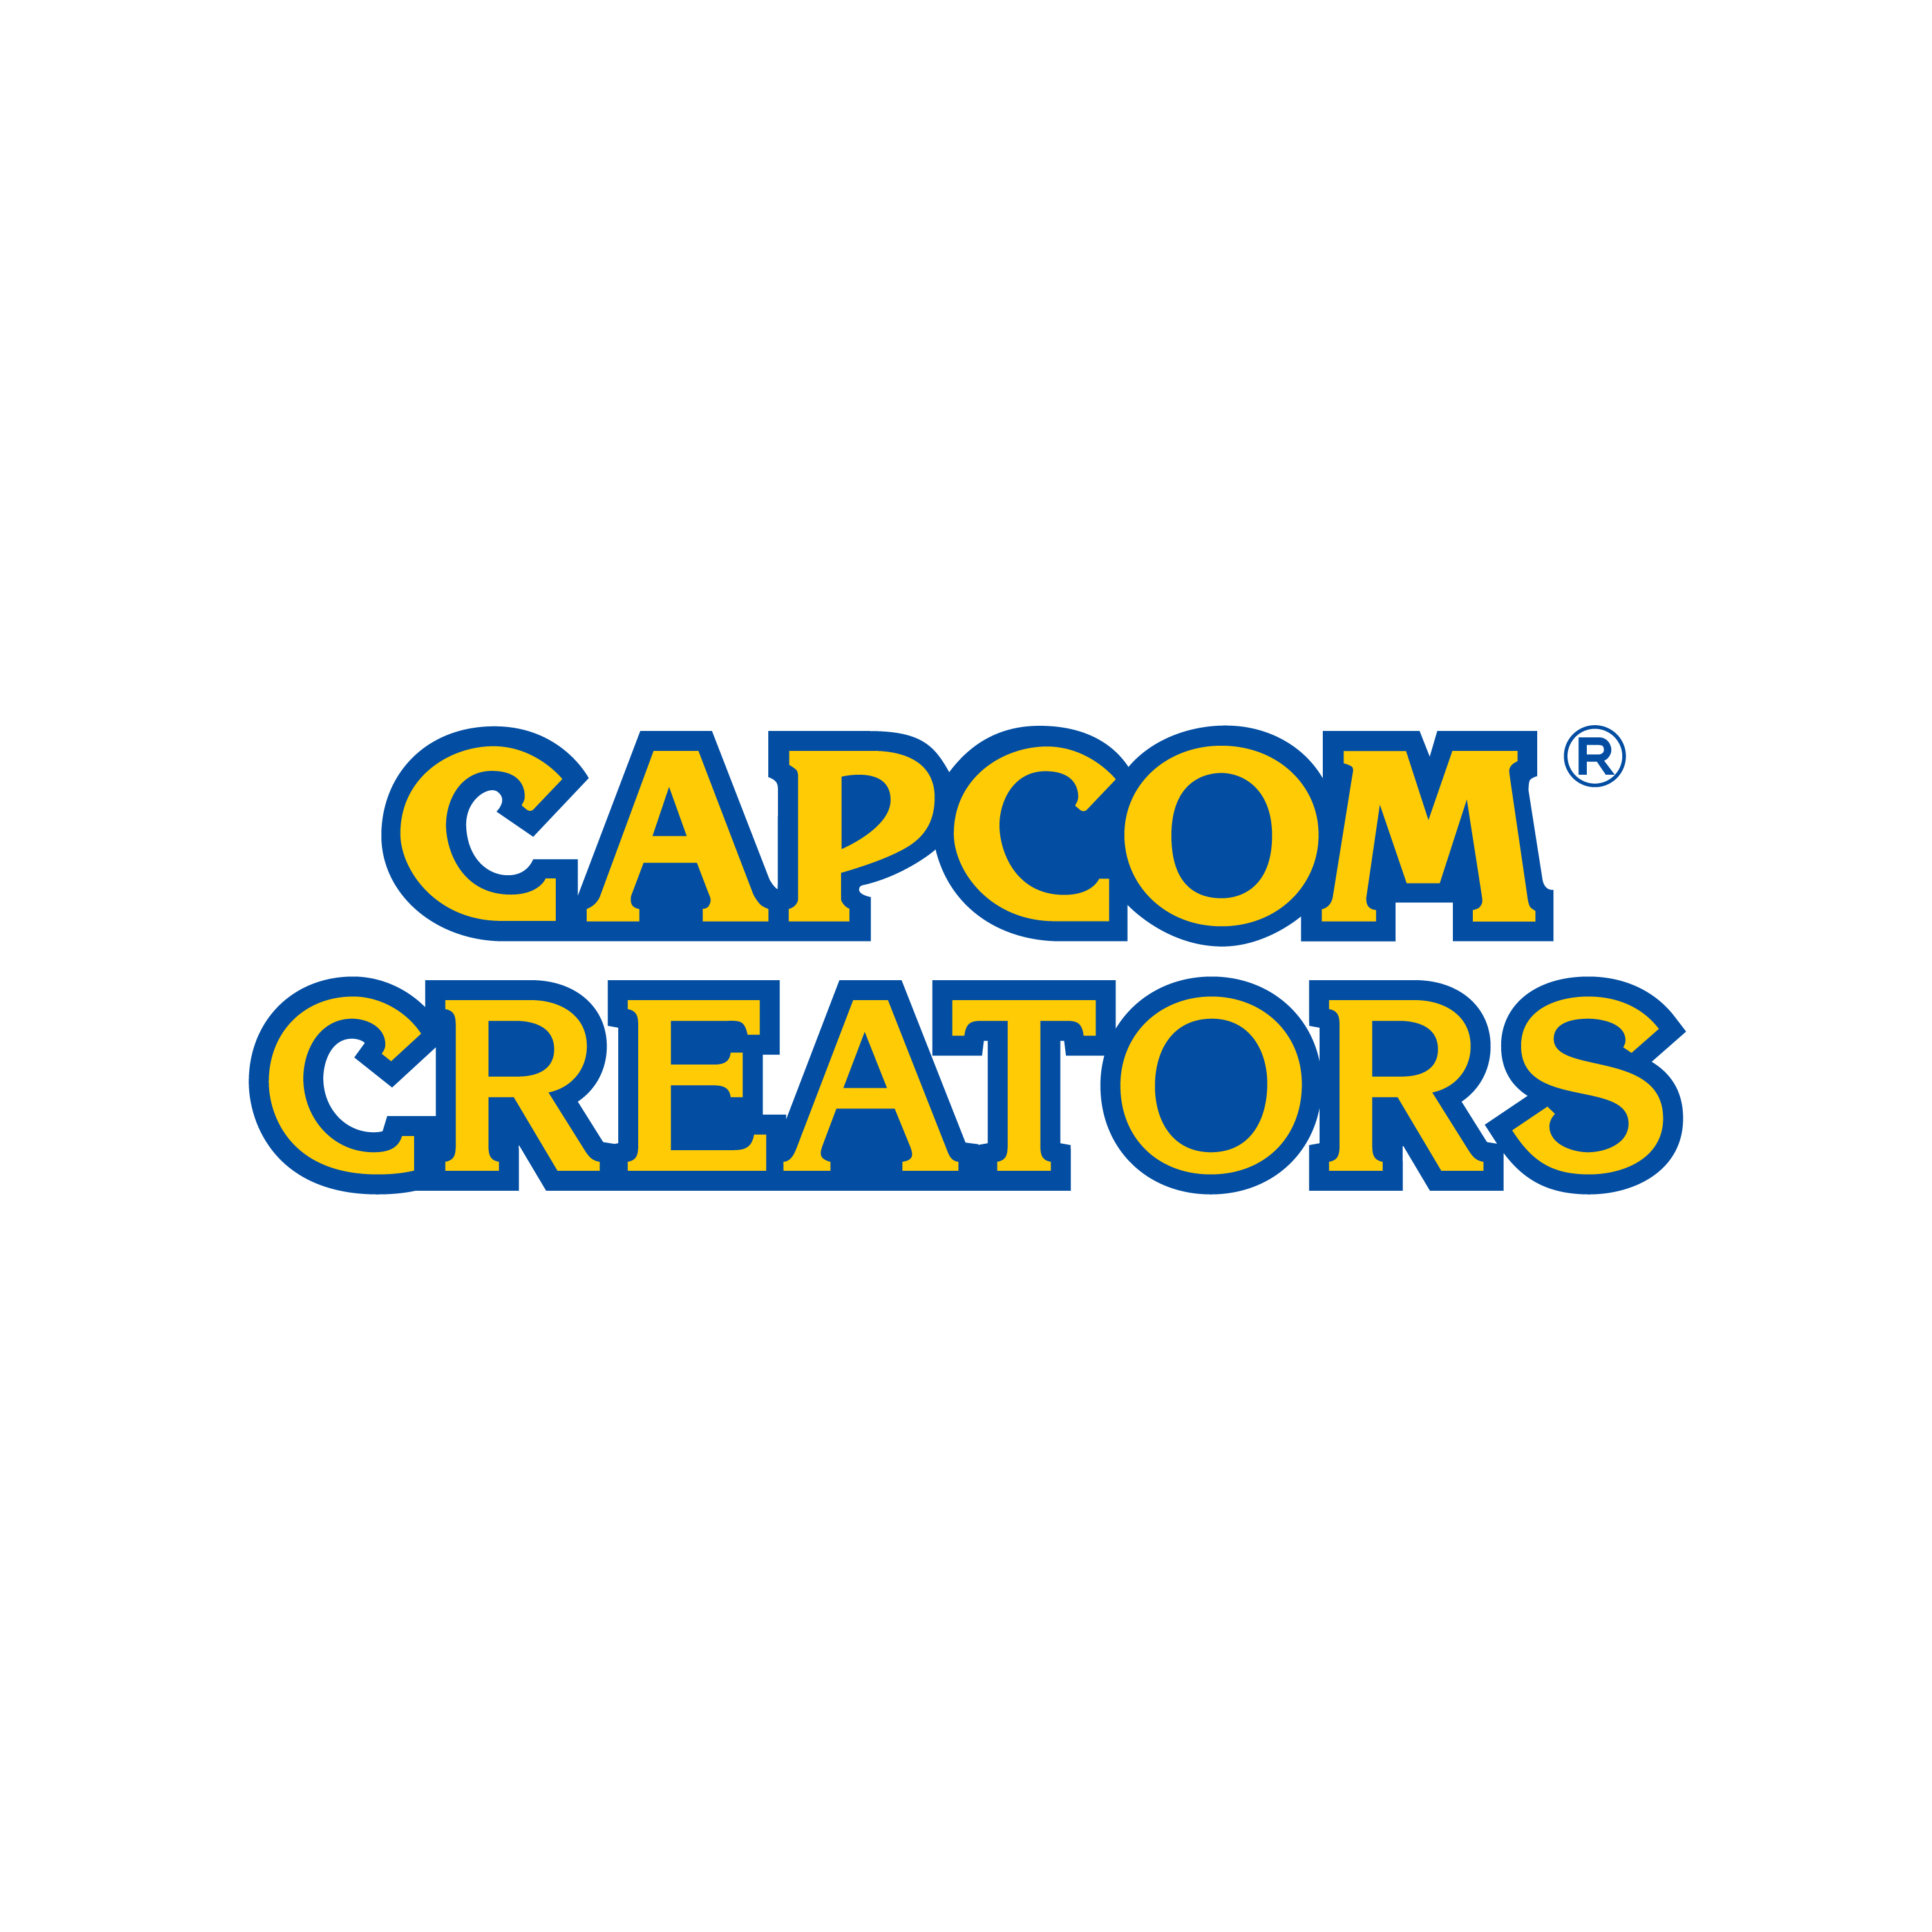 Capcom creators partner logo